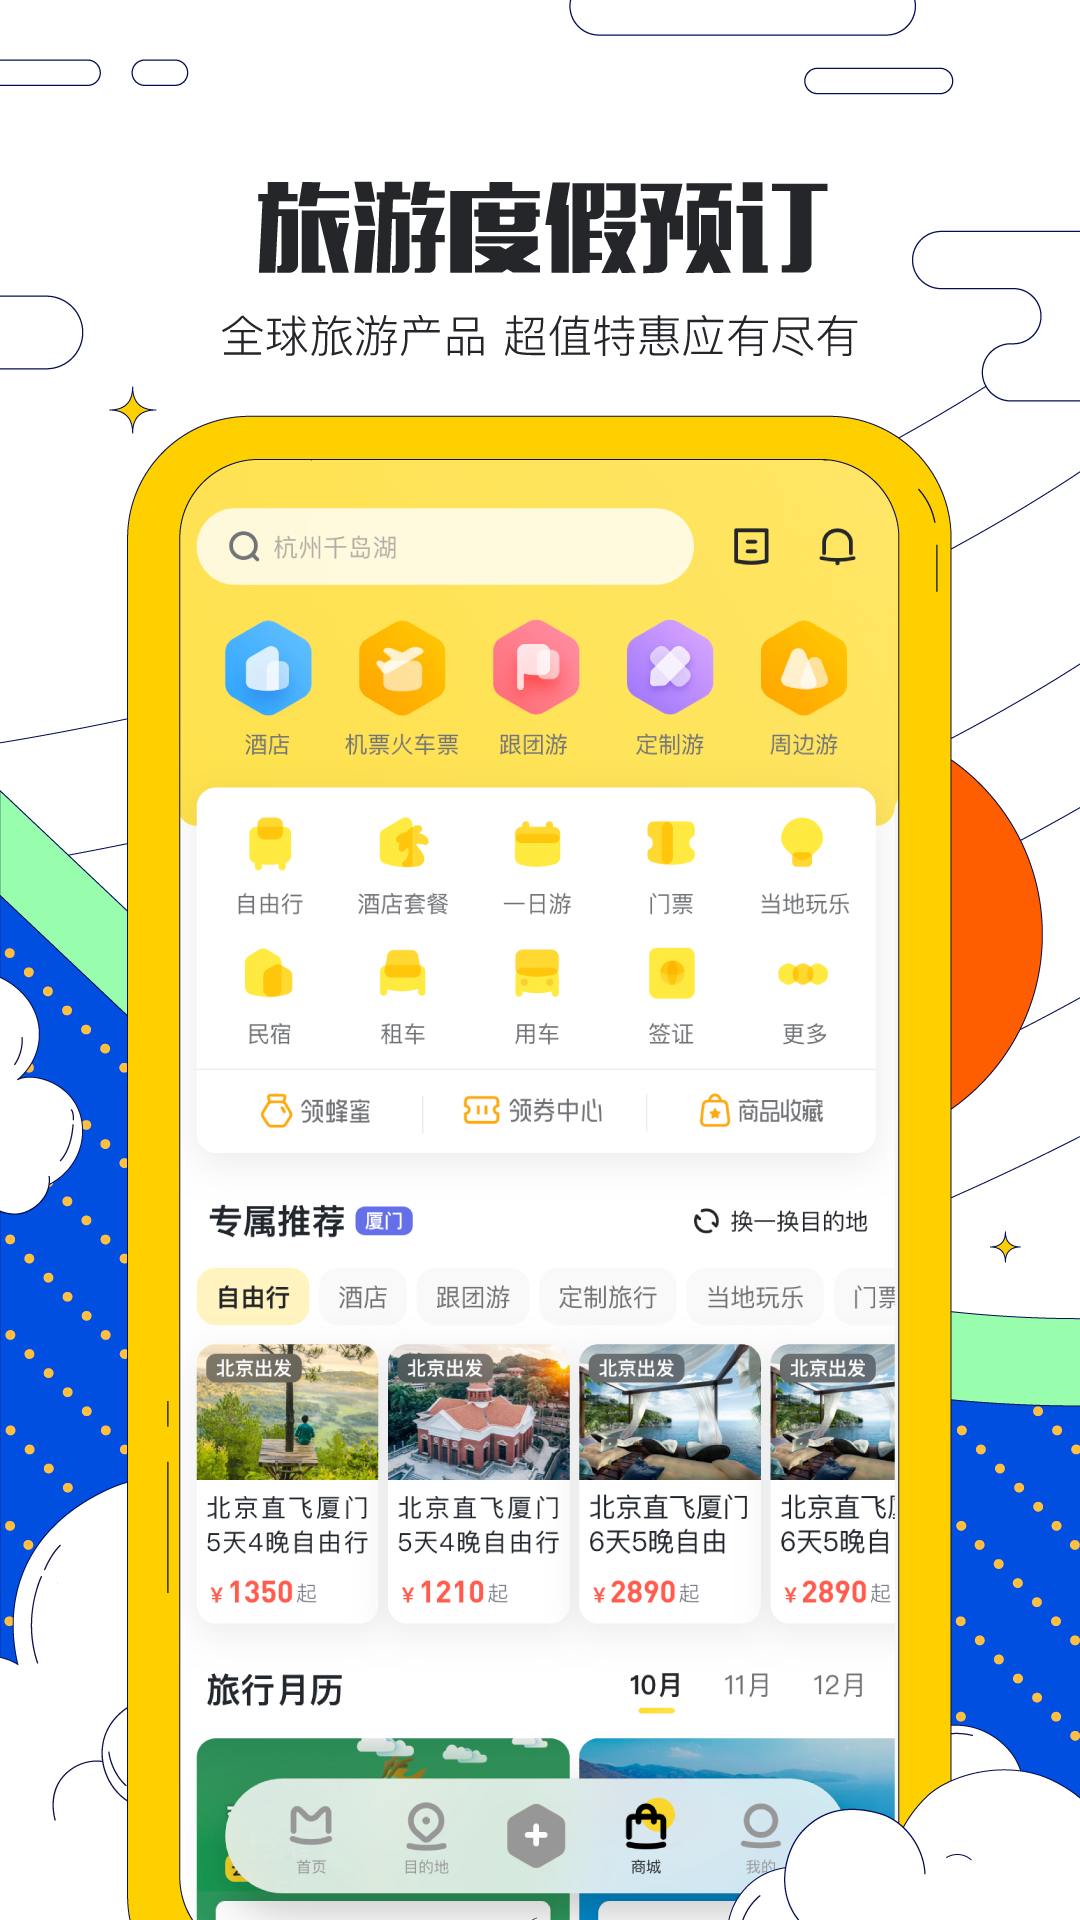 马蜂窝旅游appv10.7.7 安卓版